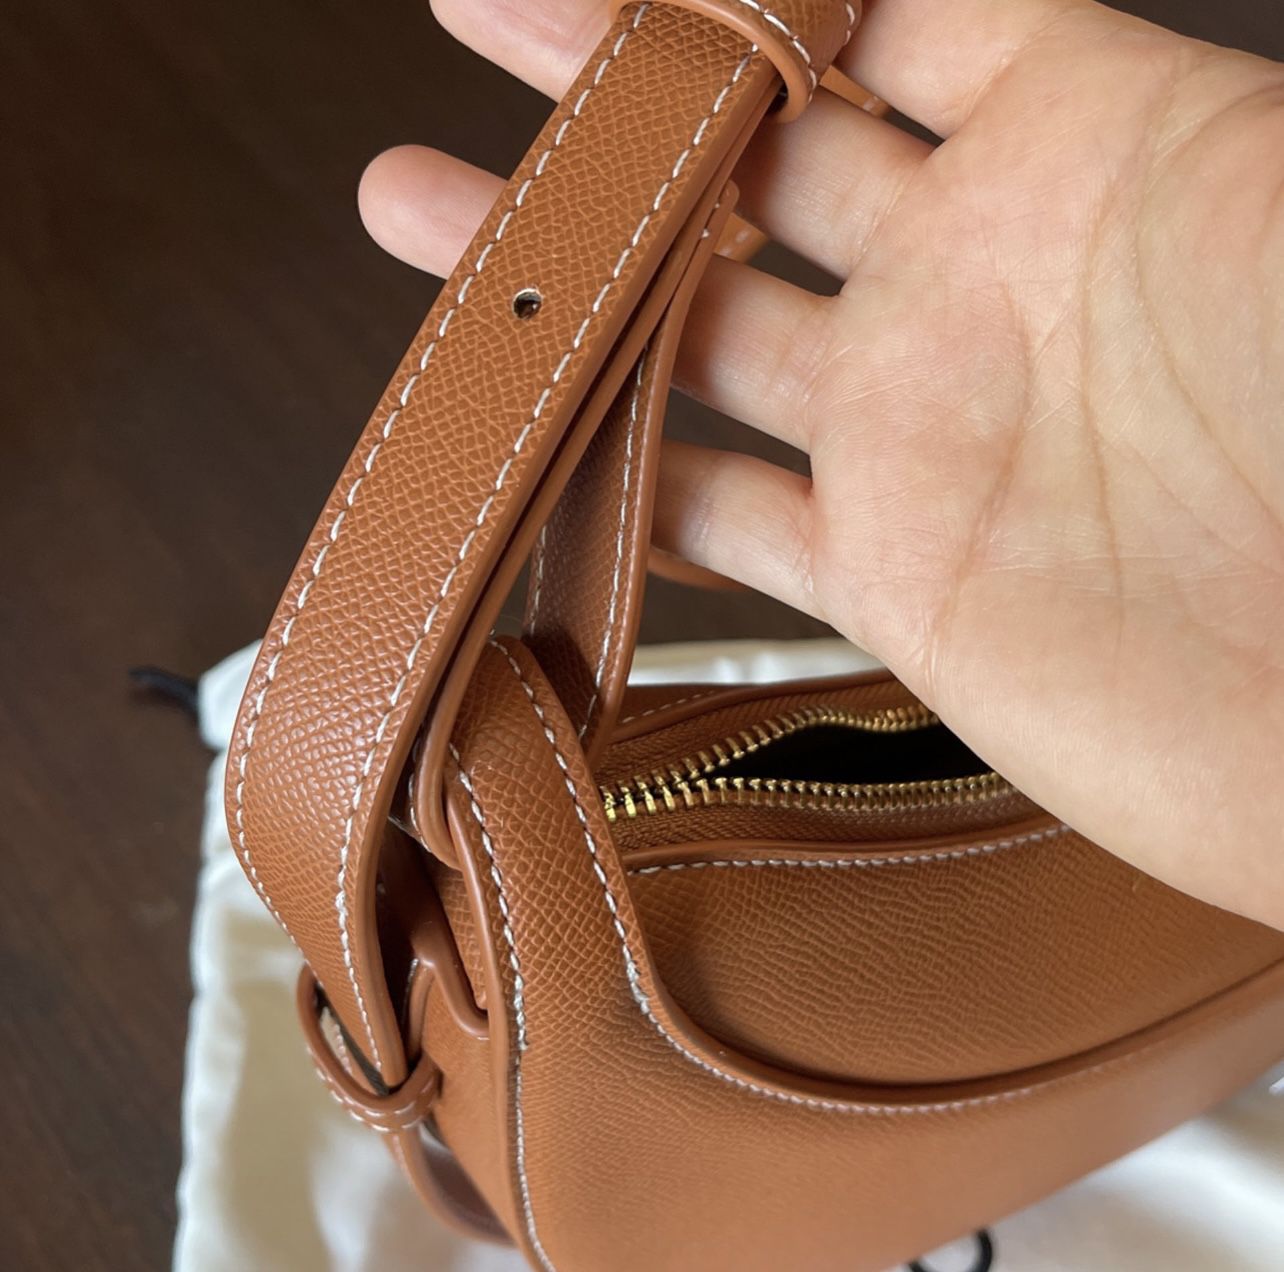 handbag for Sale in Homeland, CA - OfferUp